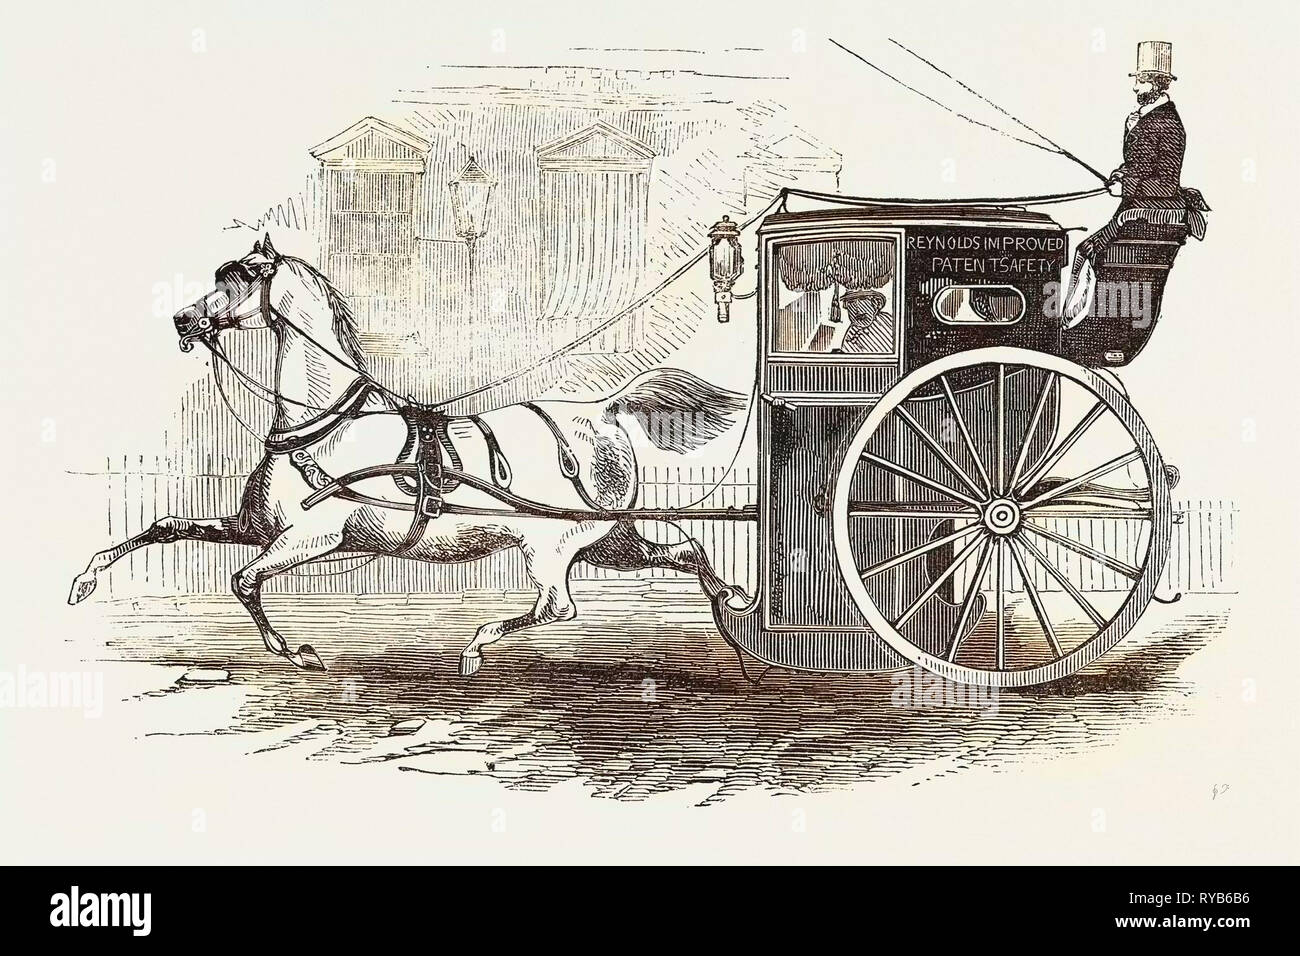 La Reynolds del brevetto migliorata cabina di sicurezza, 1846 Foto Stock